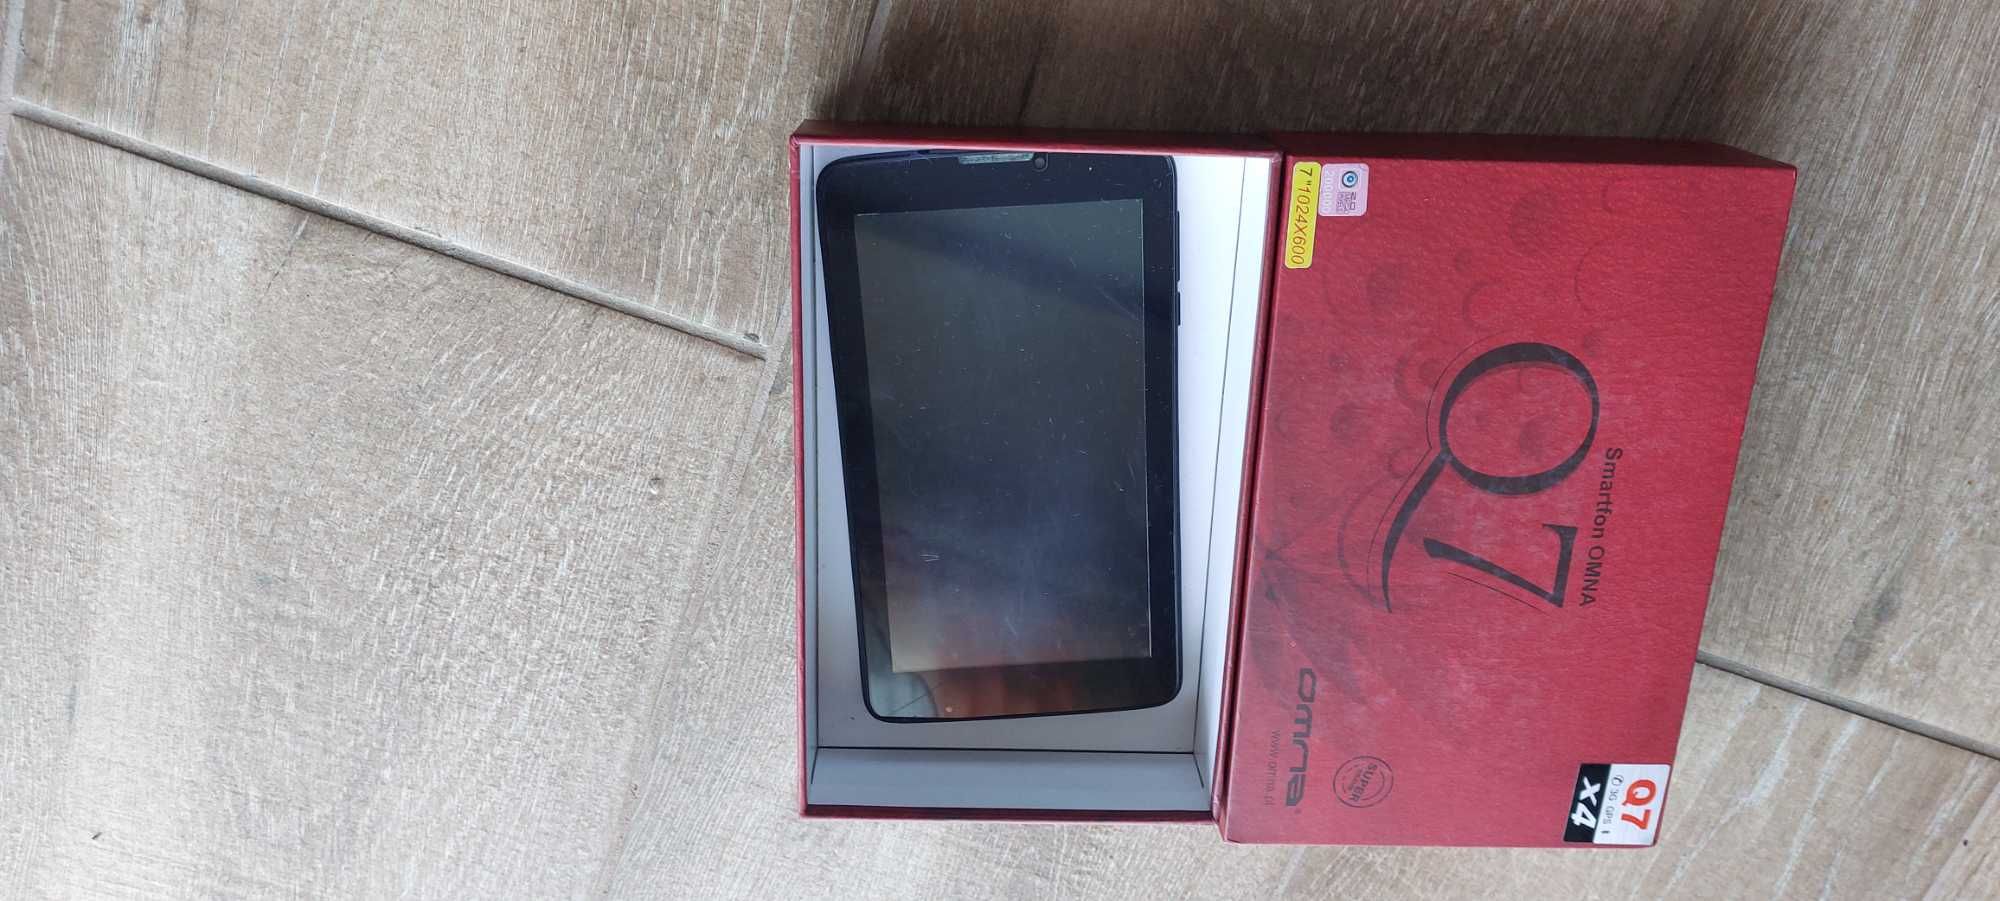 Smartfon,tablet Omna Q7 3G, 7 cali